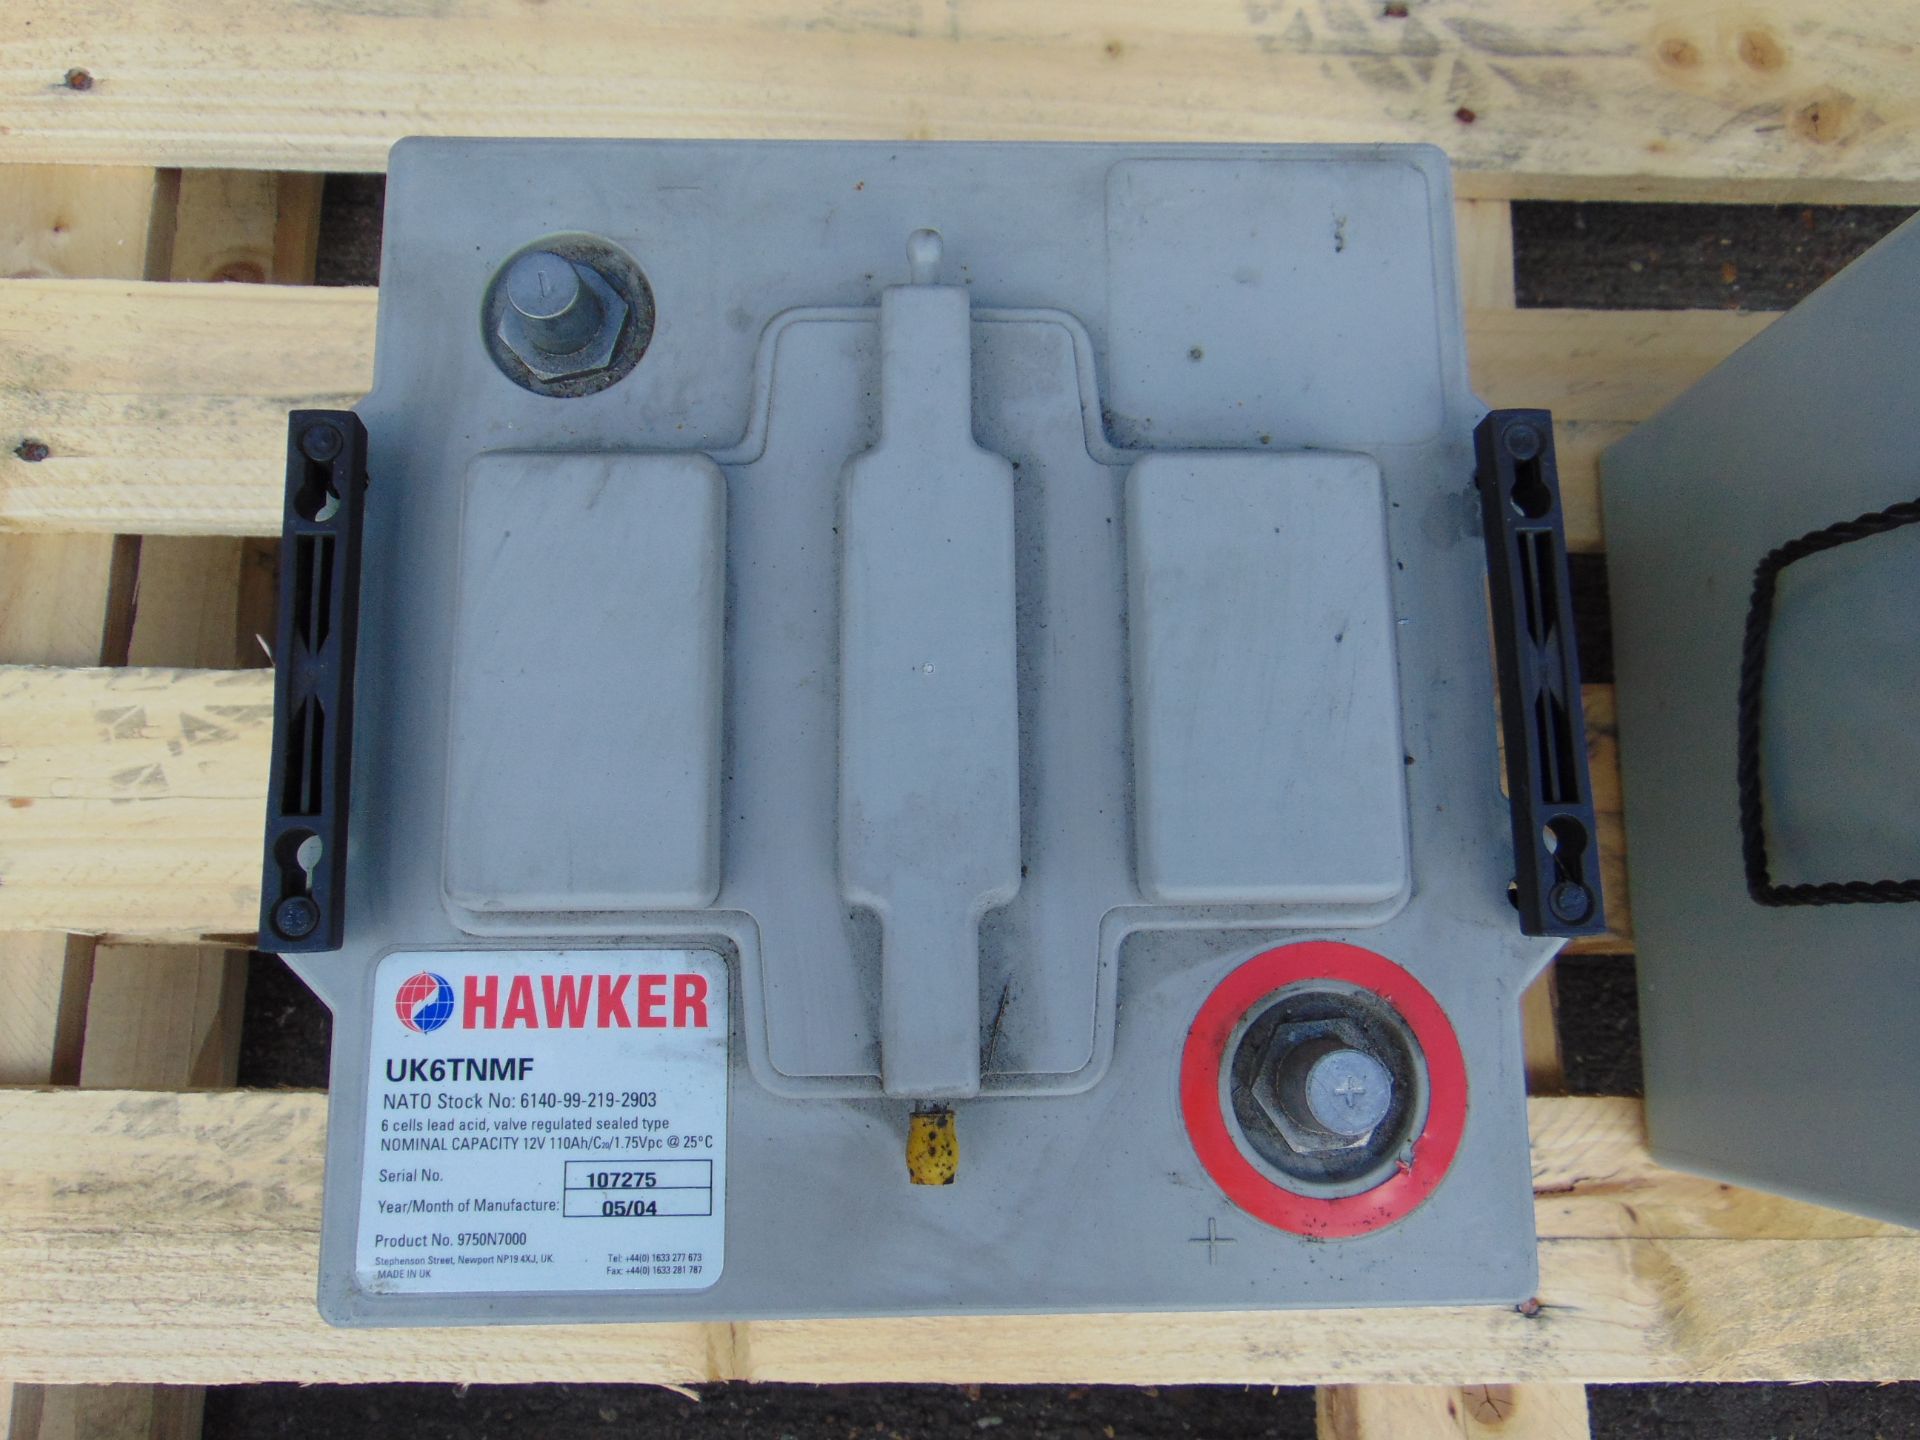 2 x Hawker UK6TFM 12 volt Batteries - Image 4 of 4